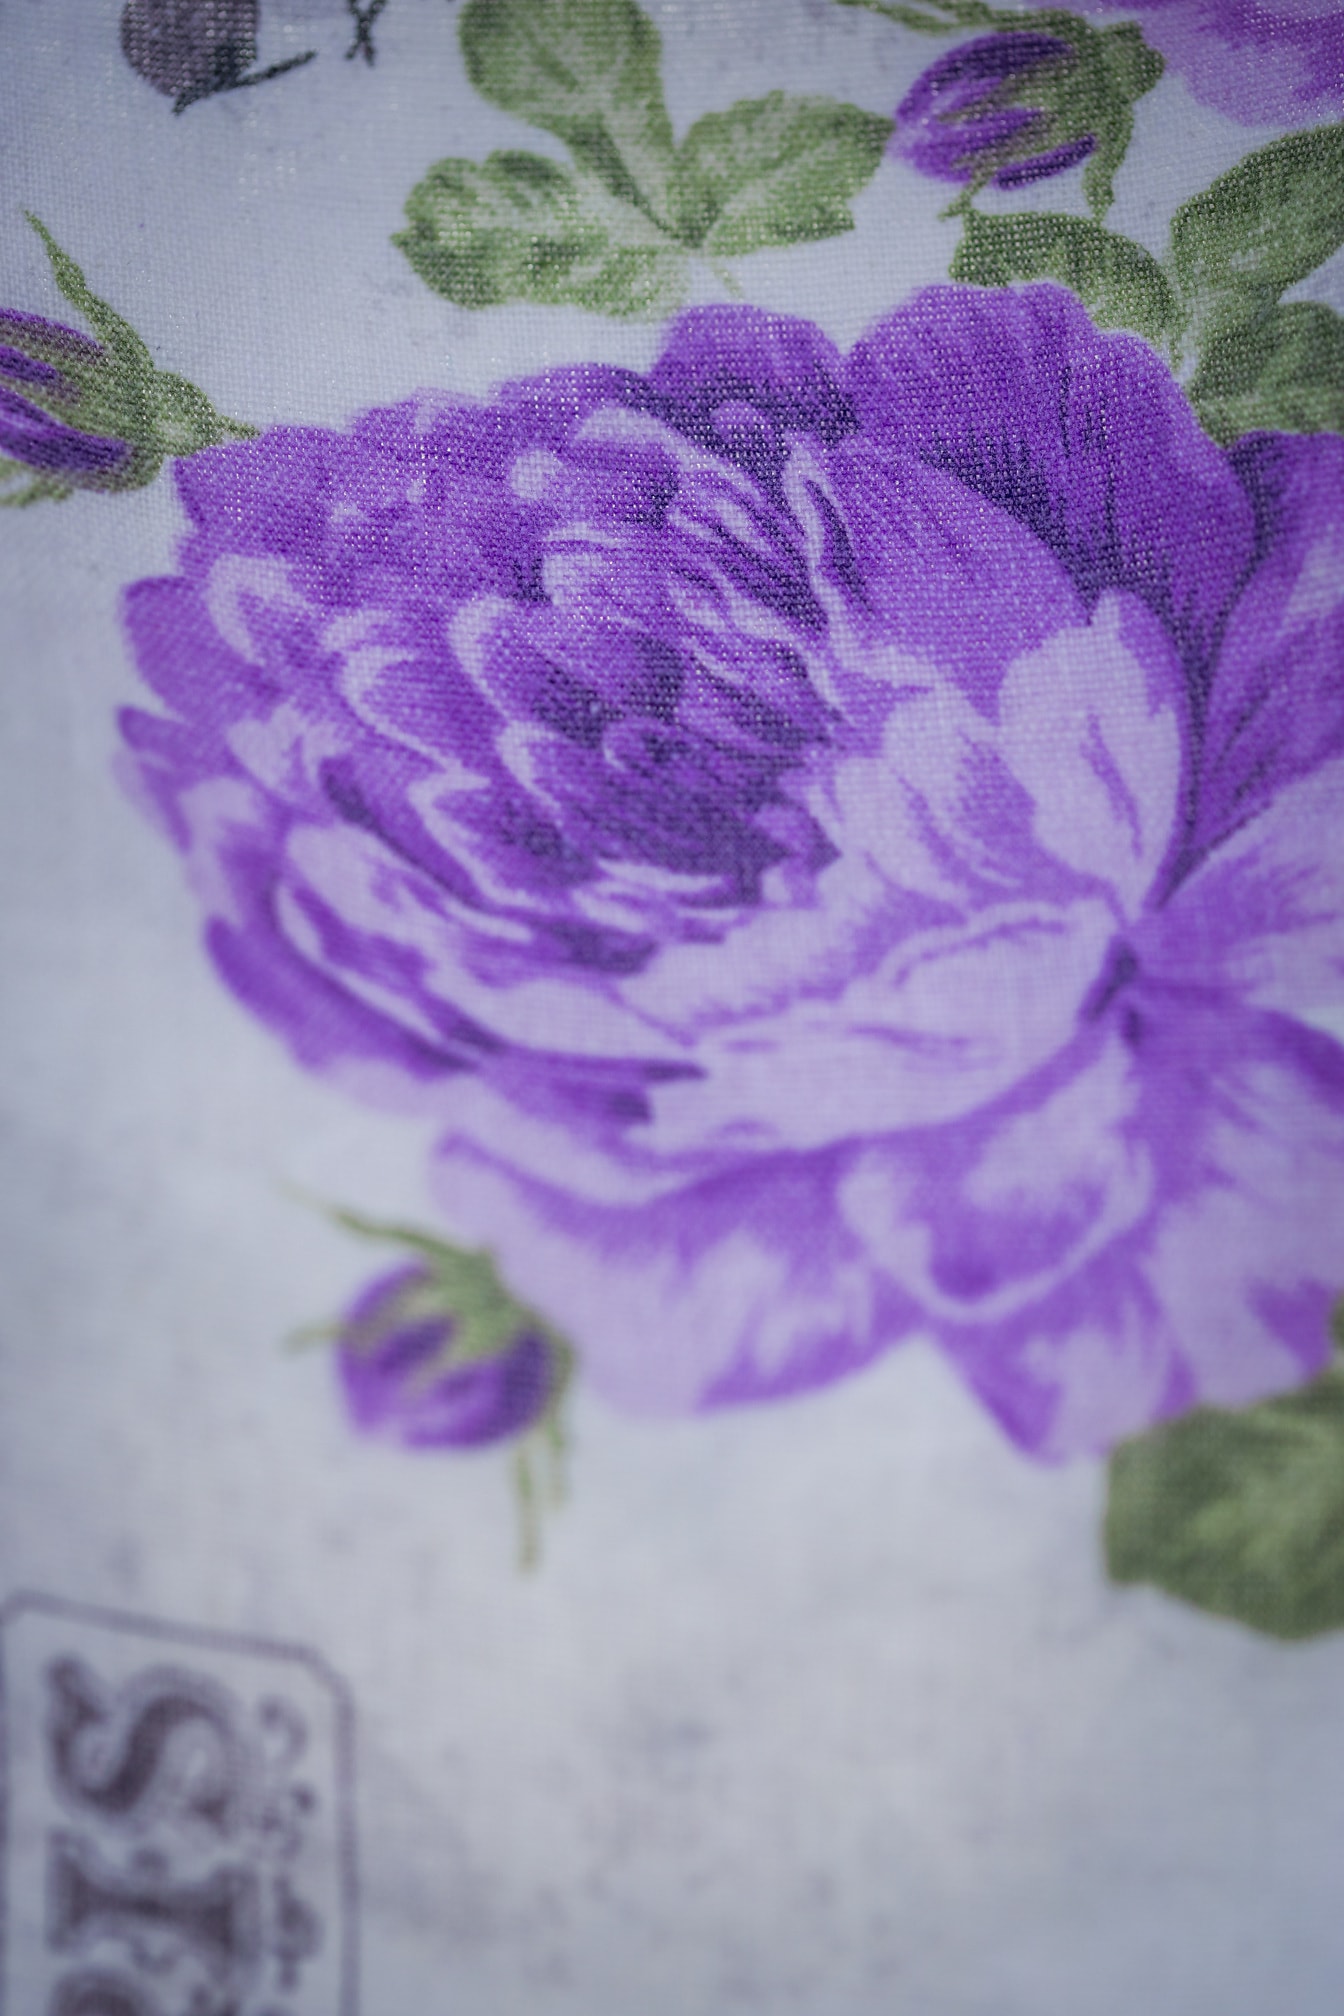 Textura close-up da tela de algodão com ilustração de flores arroxeadas